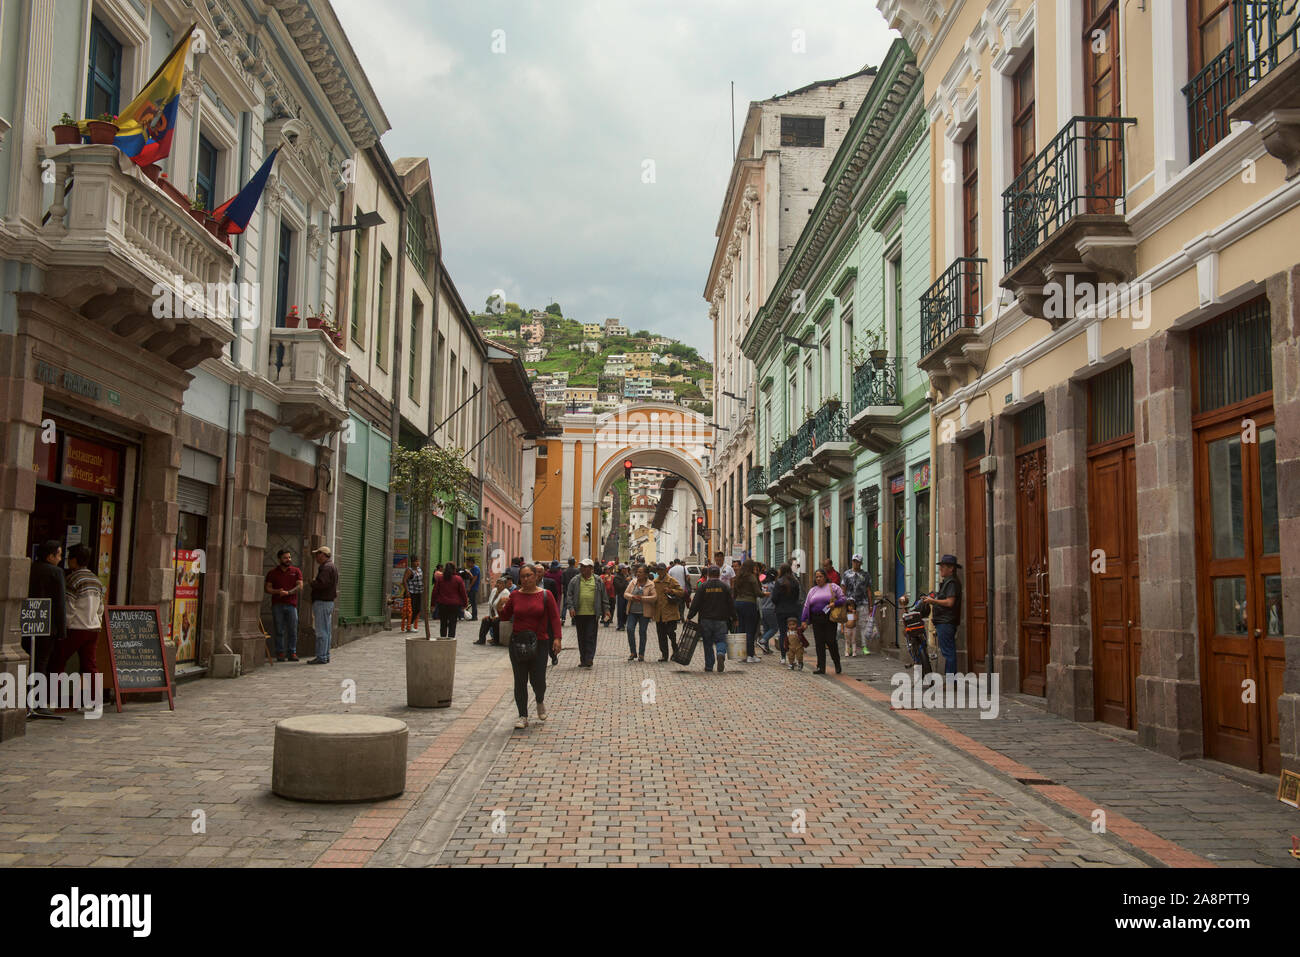 L'architecture coloniale dans la vieille ville historique de Quito, Équateur Banque D'Images